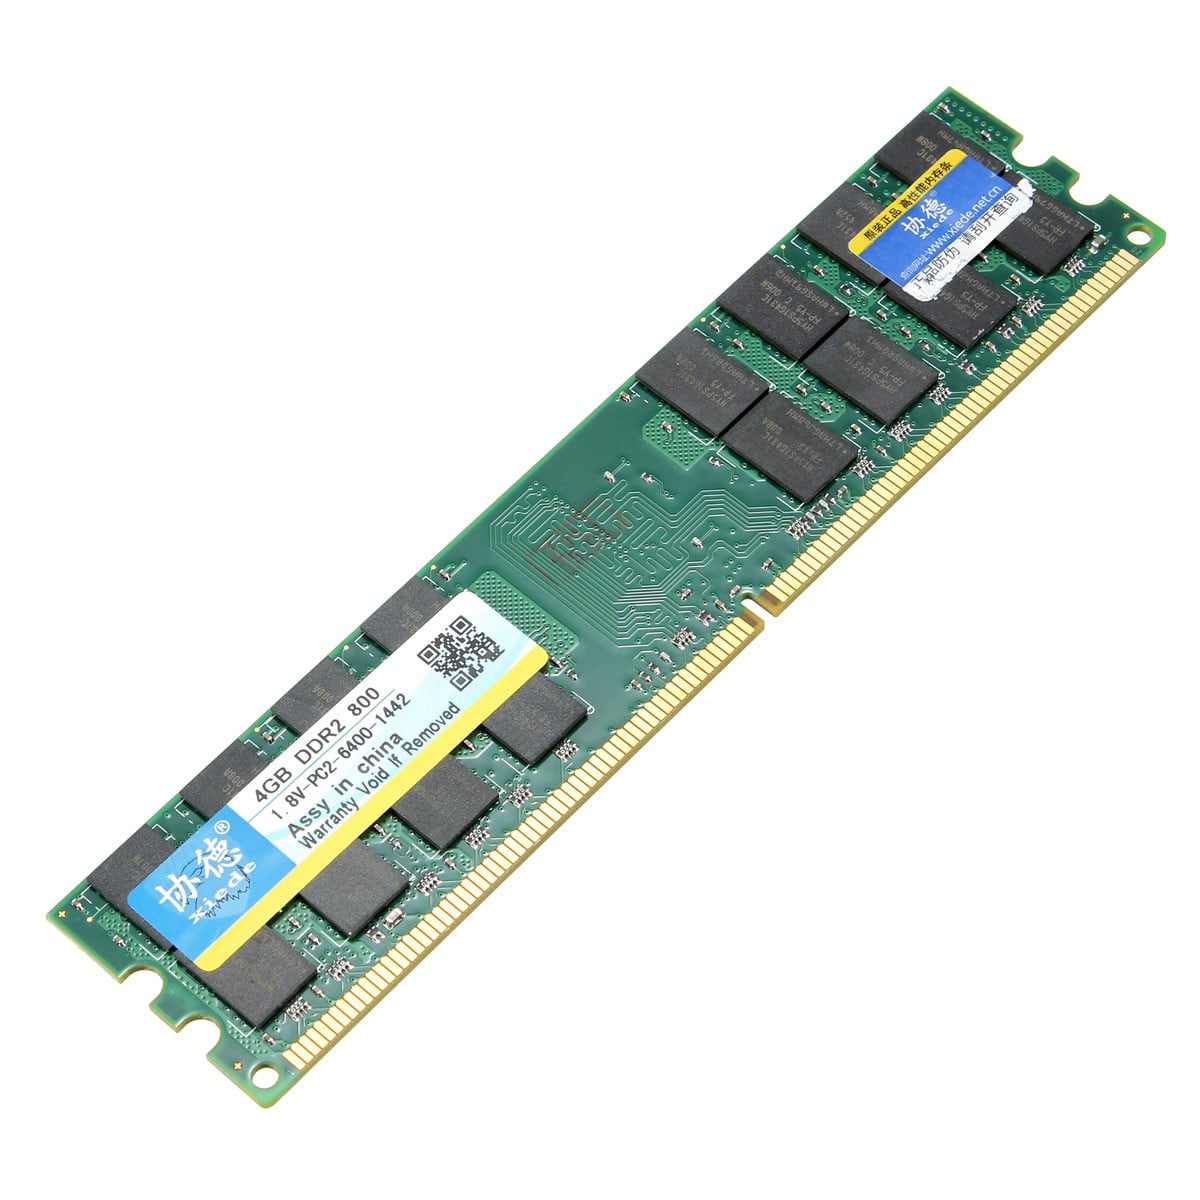 OFFTEK 4GB Replacement RAM Memory for Gigabyte GA-P43-ES3G Rev 1.0 Motherboard Memory DDR2-6400 - Non-ECC